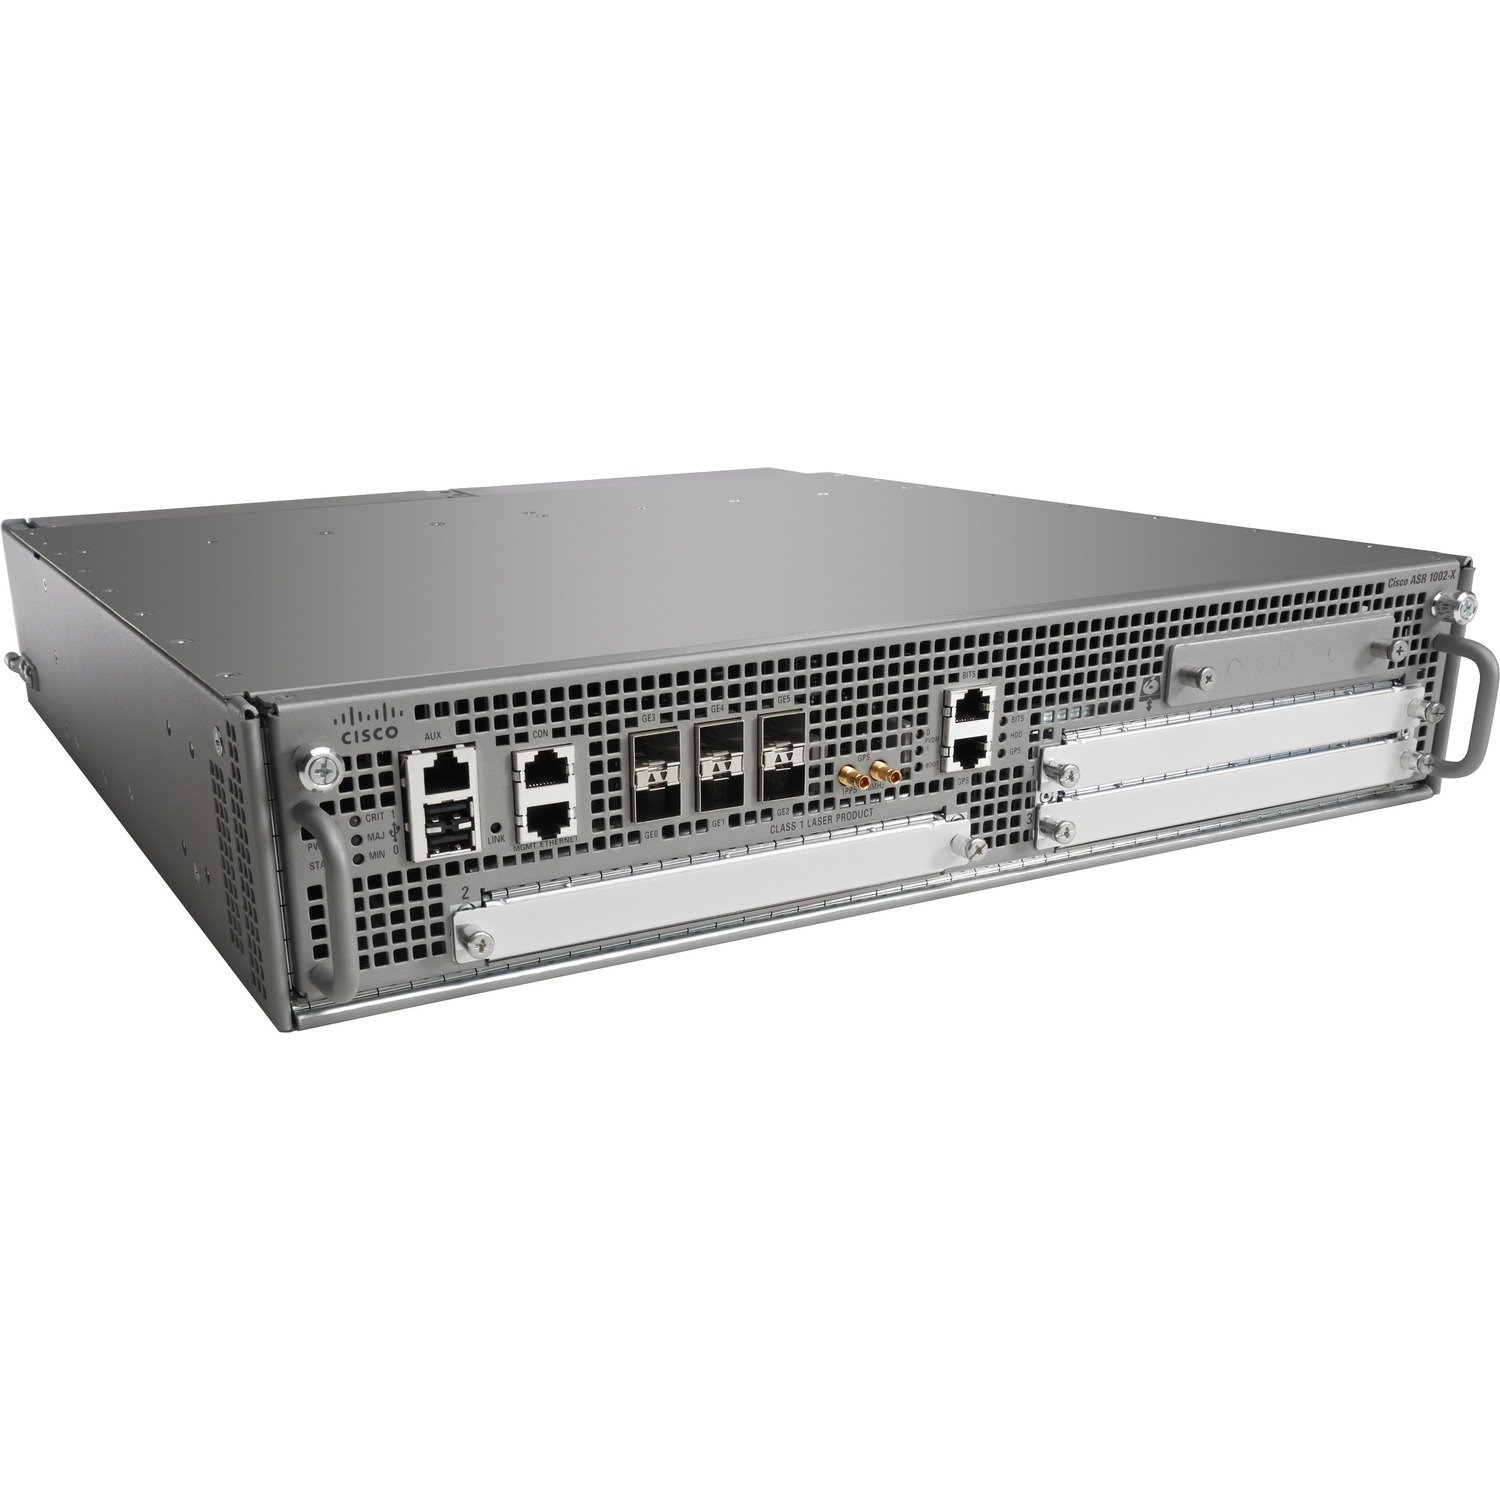 Cisco 1002 Aggregation Service Router HA Bundle